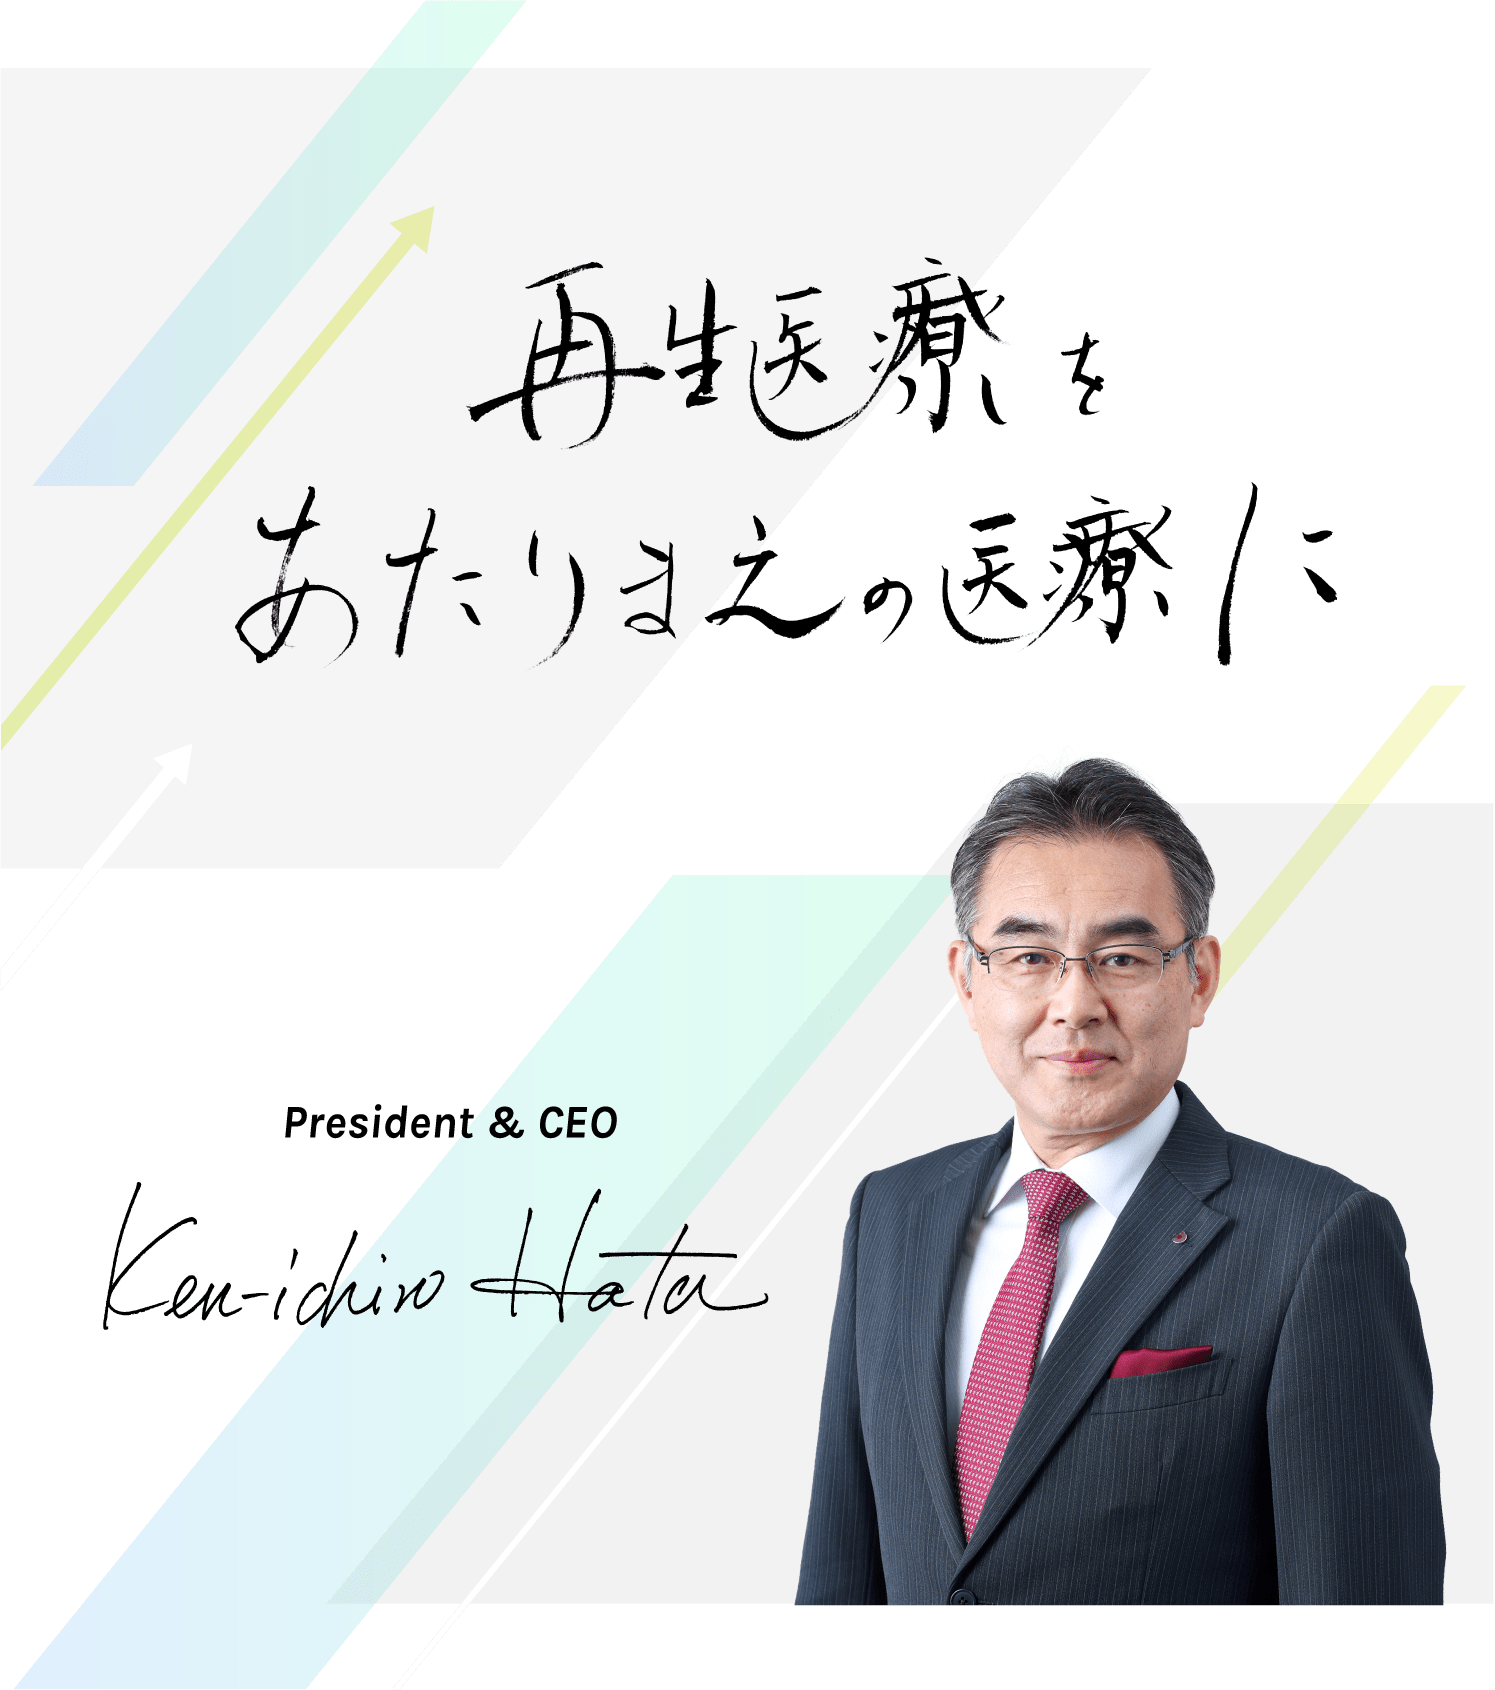 再生医療をあたりまえの医療に　President and CEO Kenichiro Hata